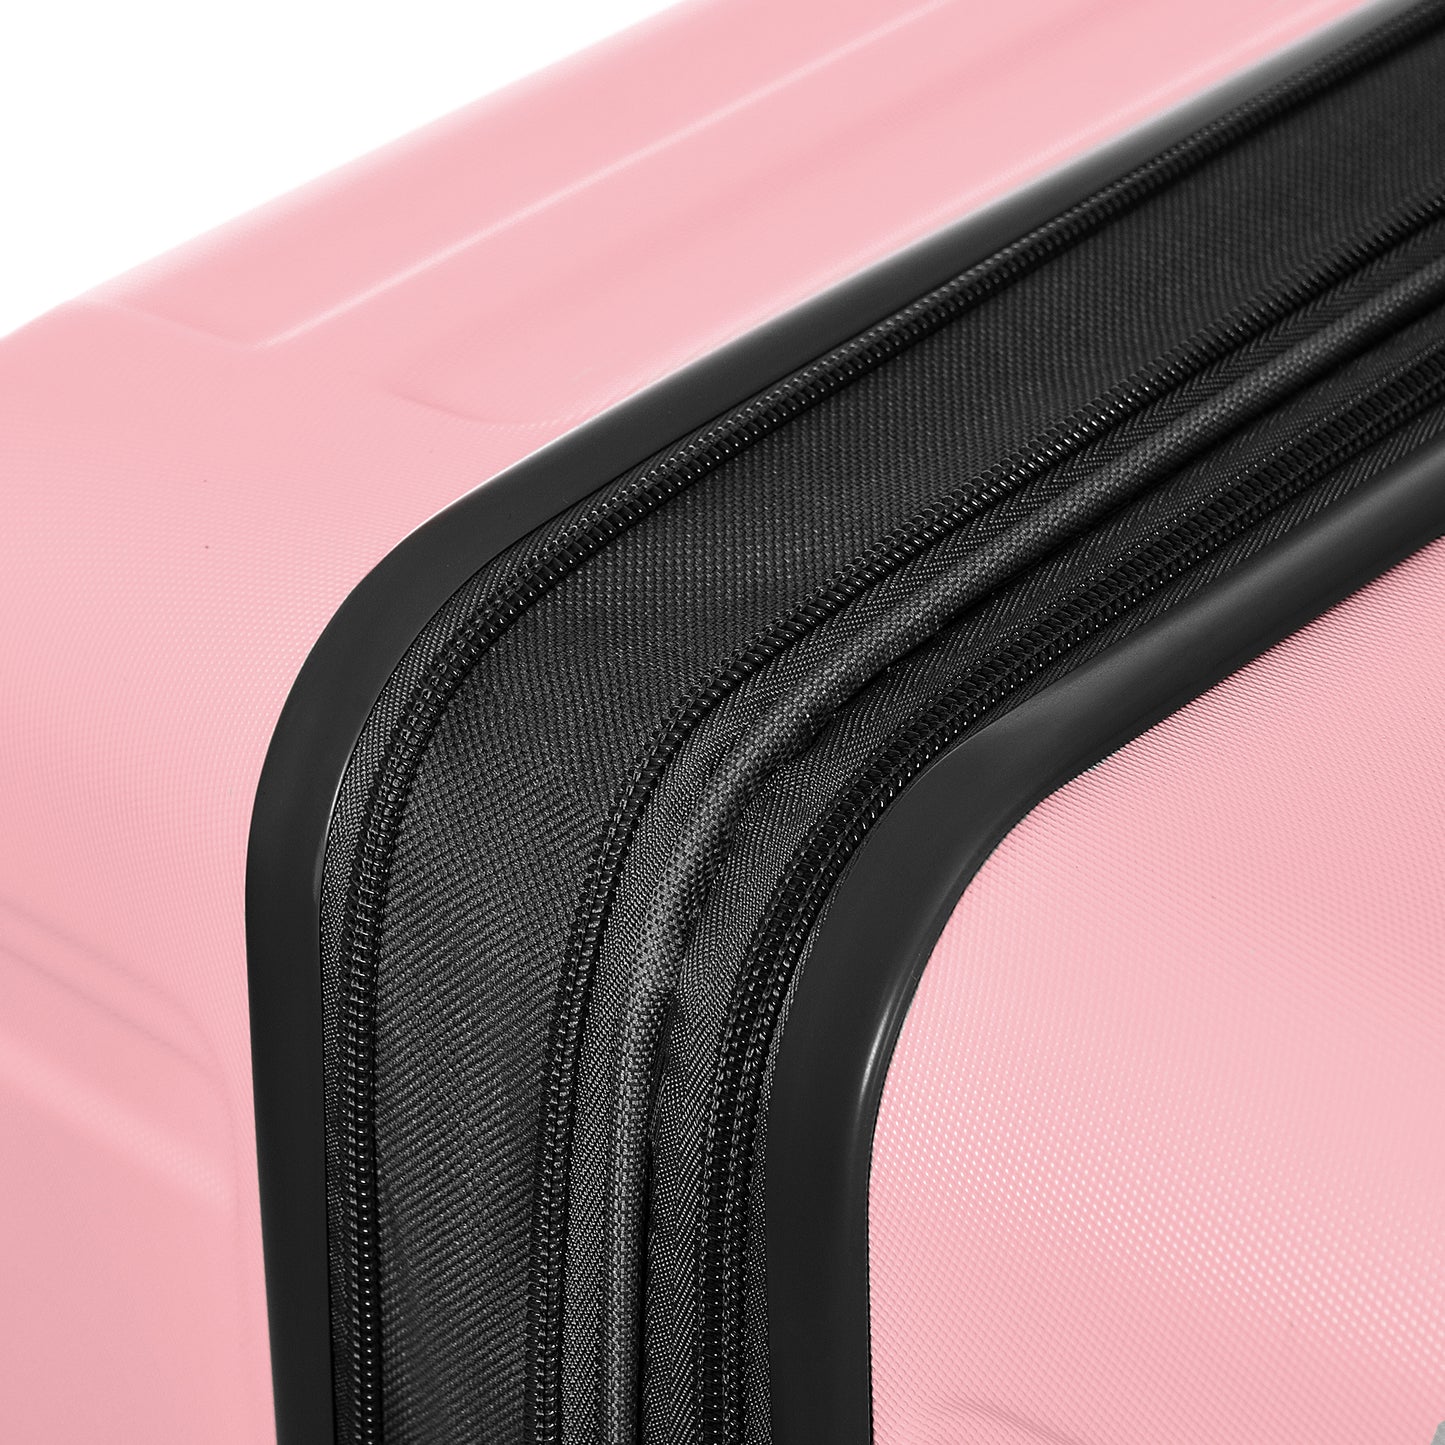 3Pc Hard Case Expandable Luggage Set (Pink)